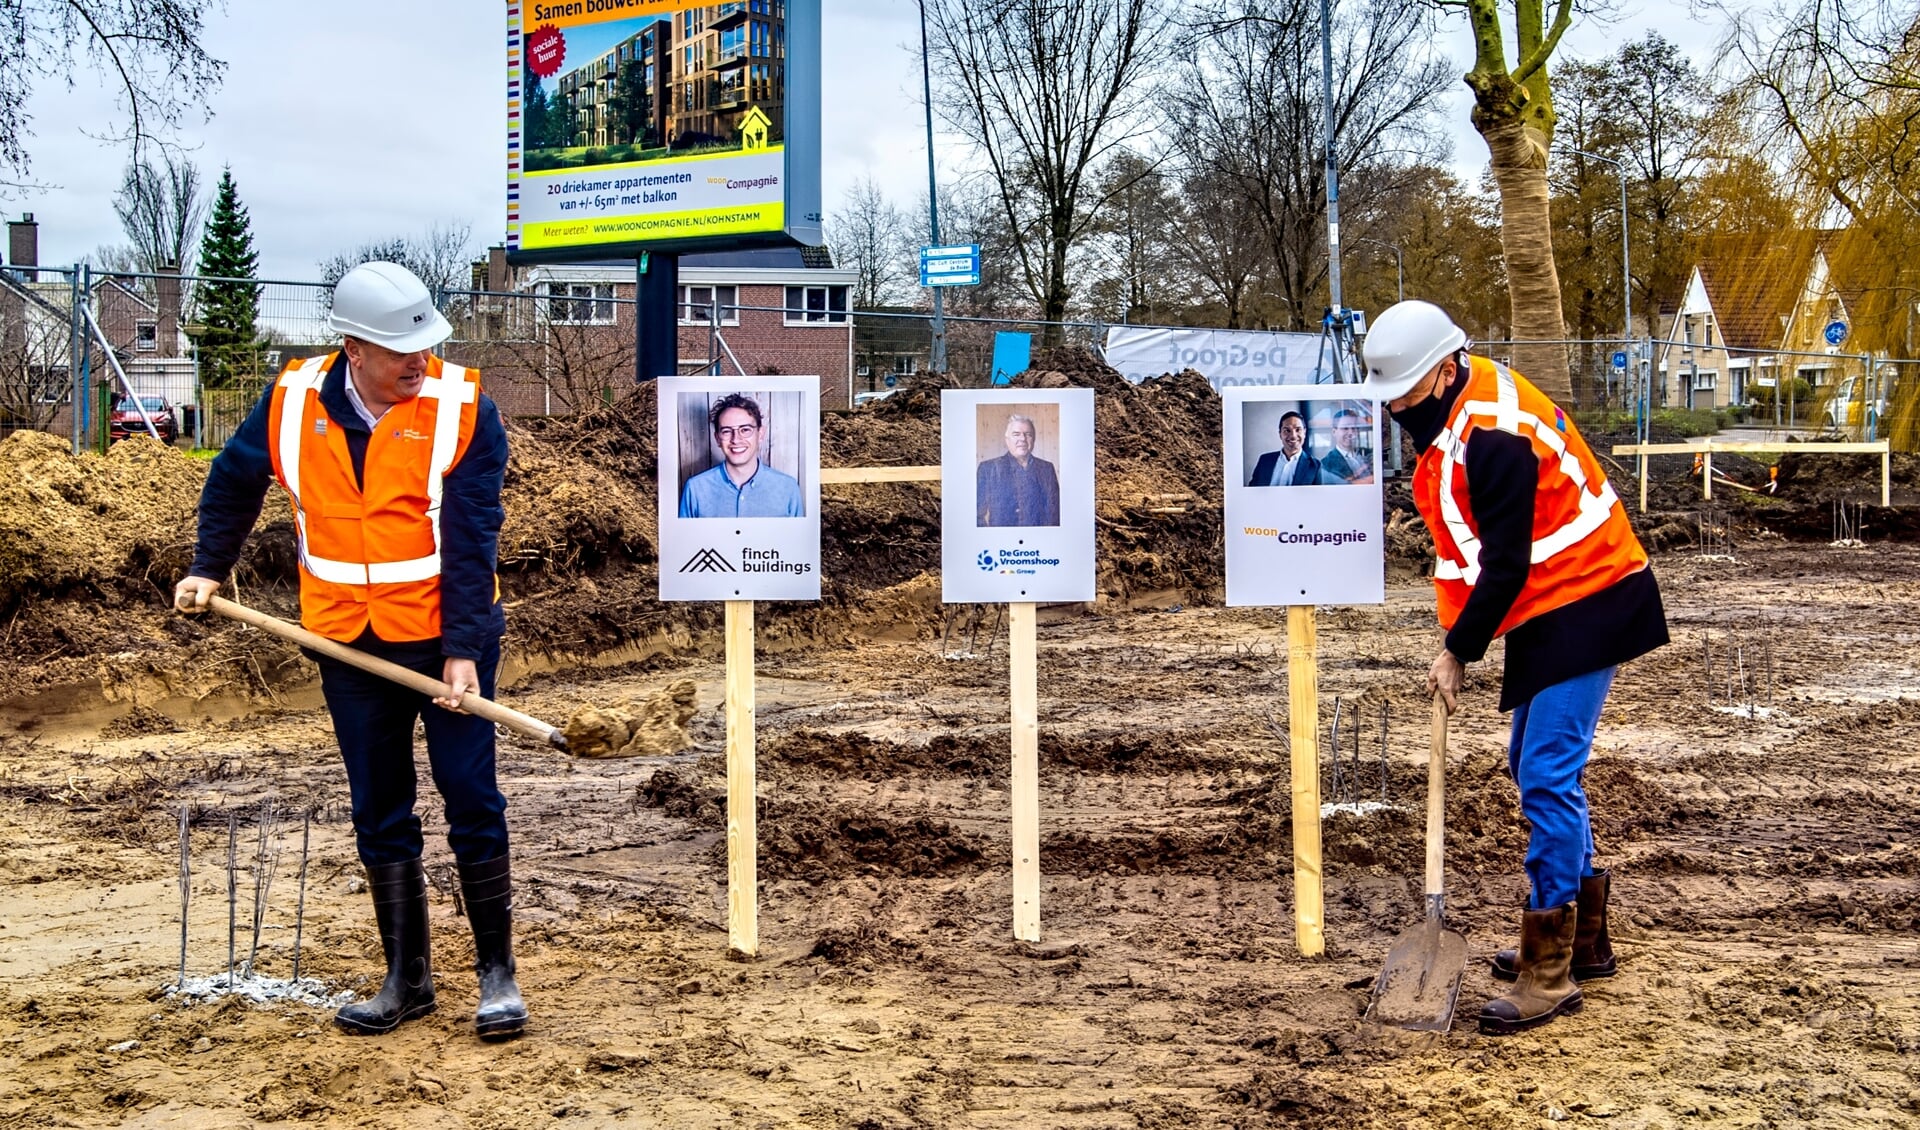 Wethouder Jelle Kaars en directeur BMB Ontwikkeling zijn trots op het feit dat er snel 62 woningen worden gerealiseerd in Monnickendam.